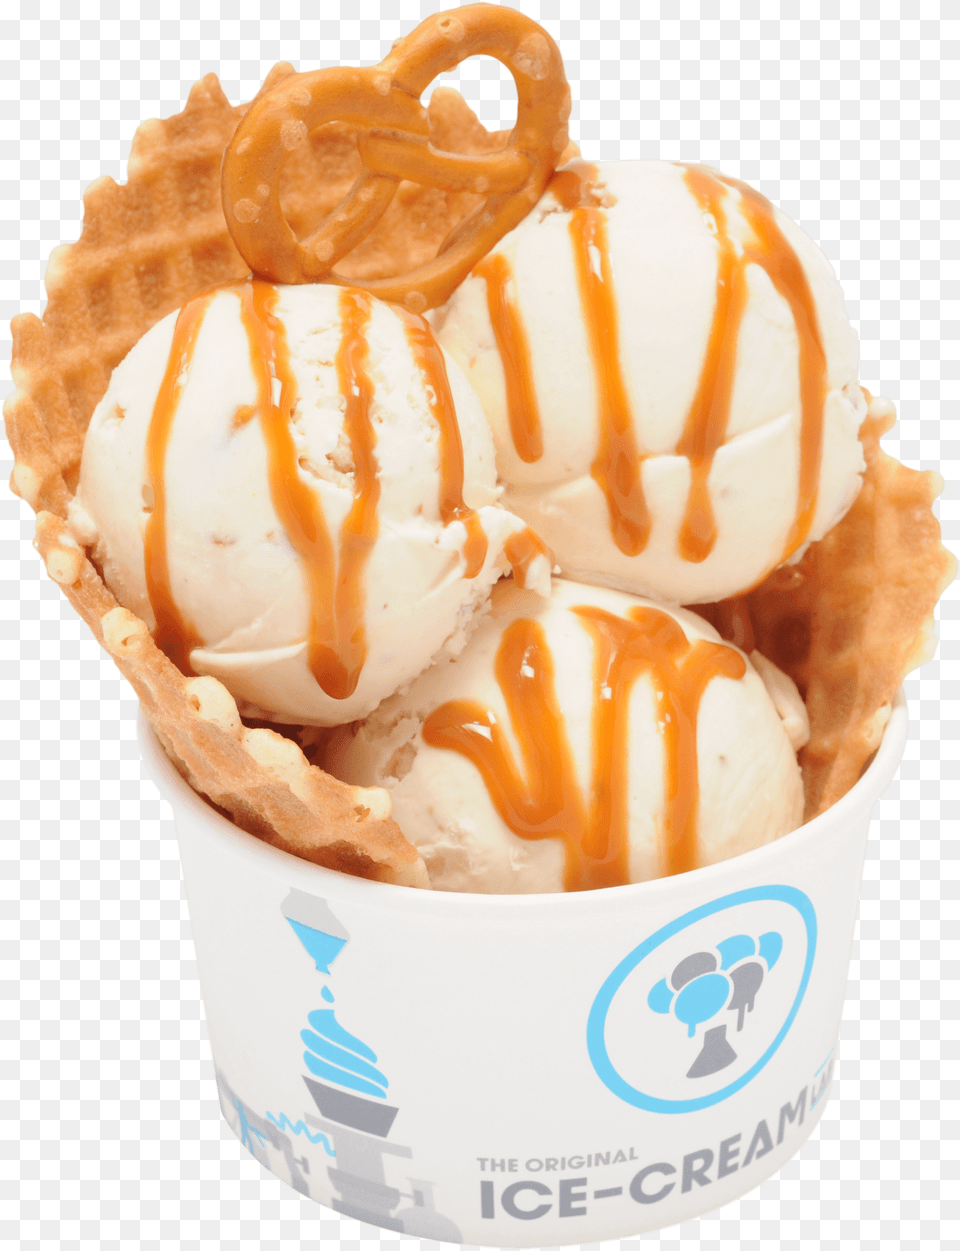 Ice Cream In A Conem 3 Bowl, Dessert, Food, Ice Cream, Soft Serve Ice Cream Png Image